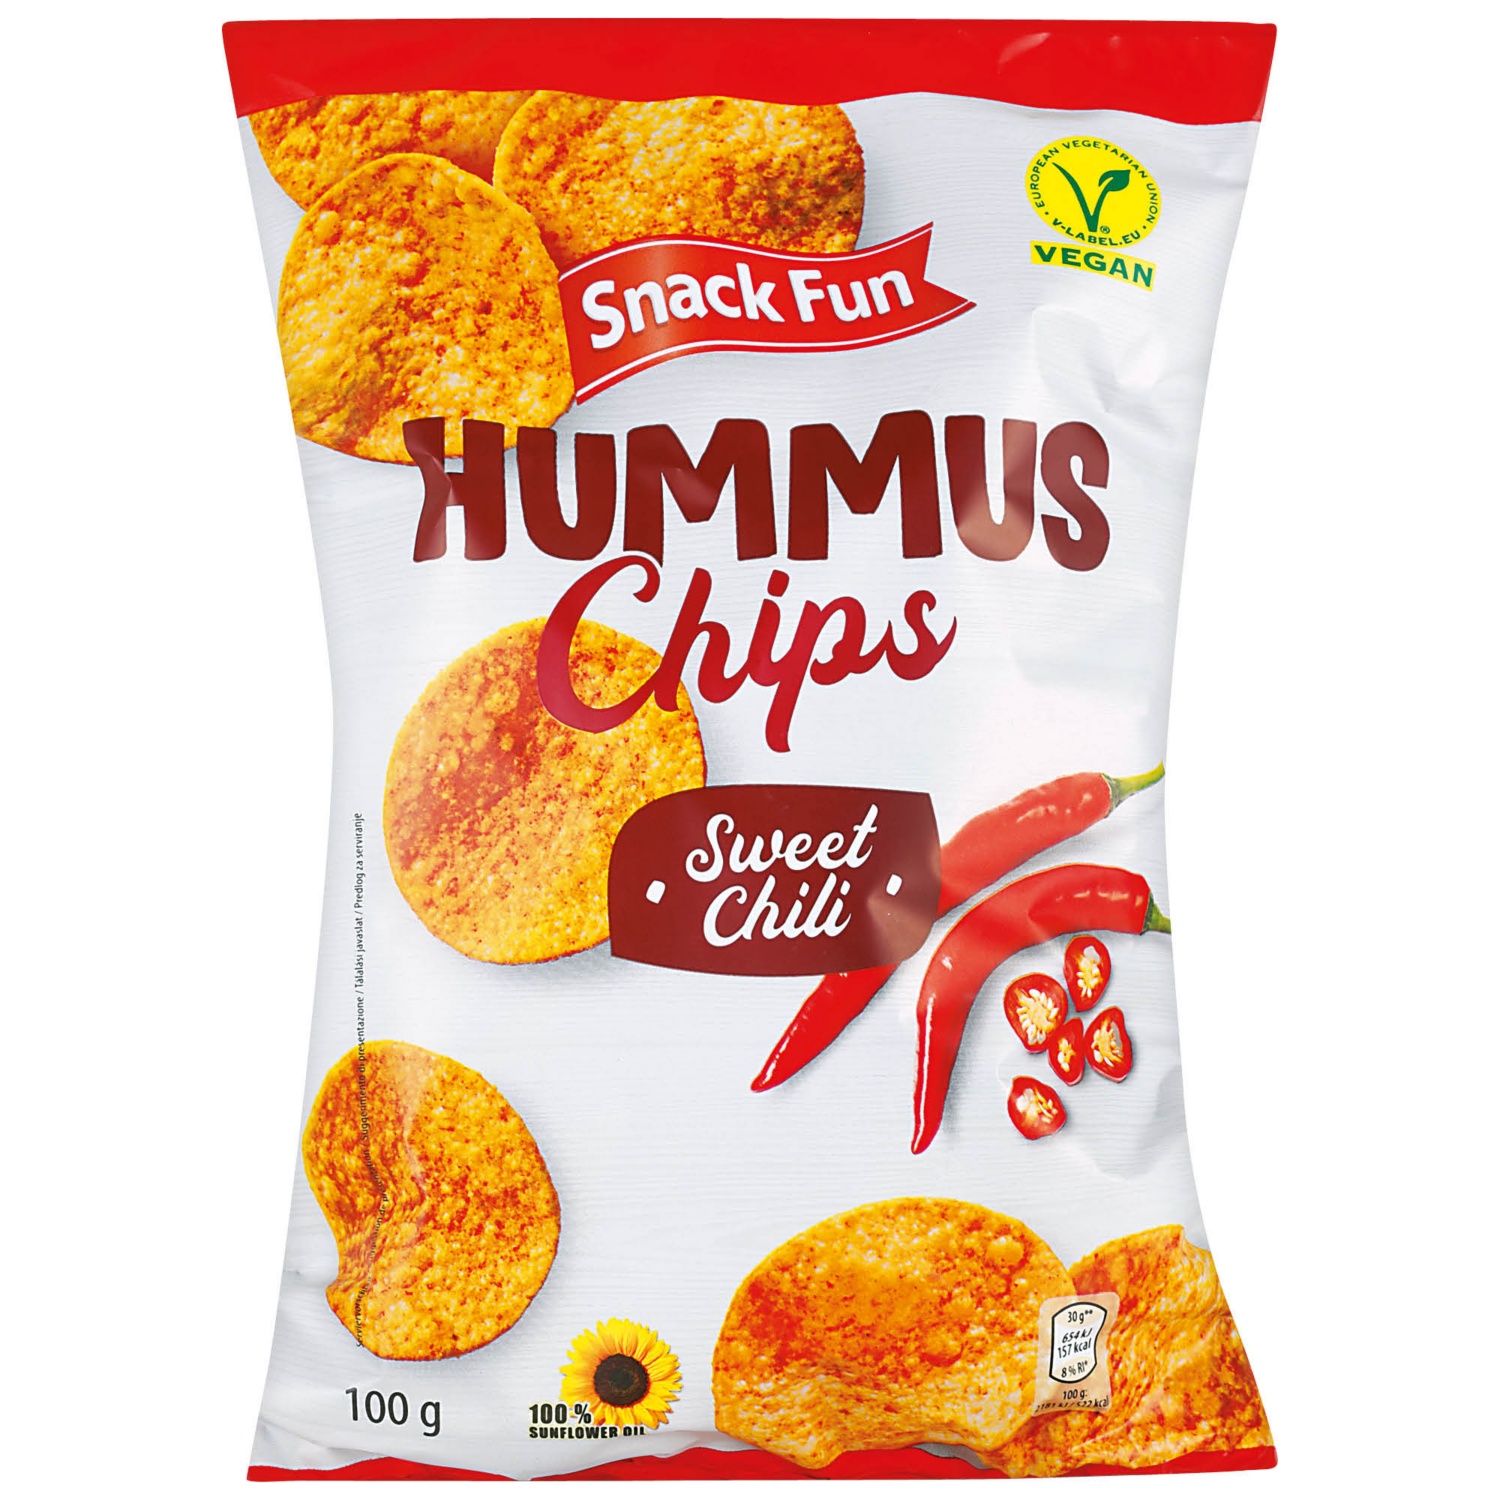 SNACK FUN Hummus chips al chili